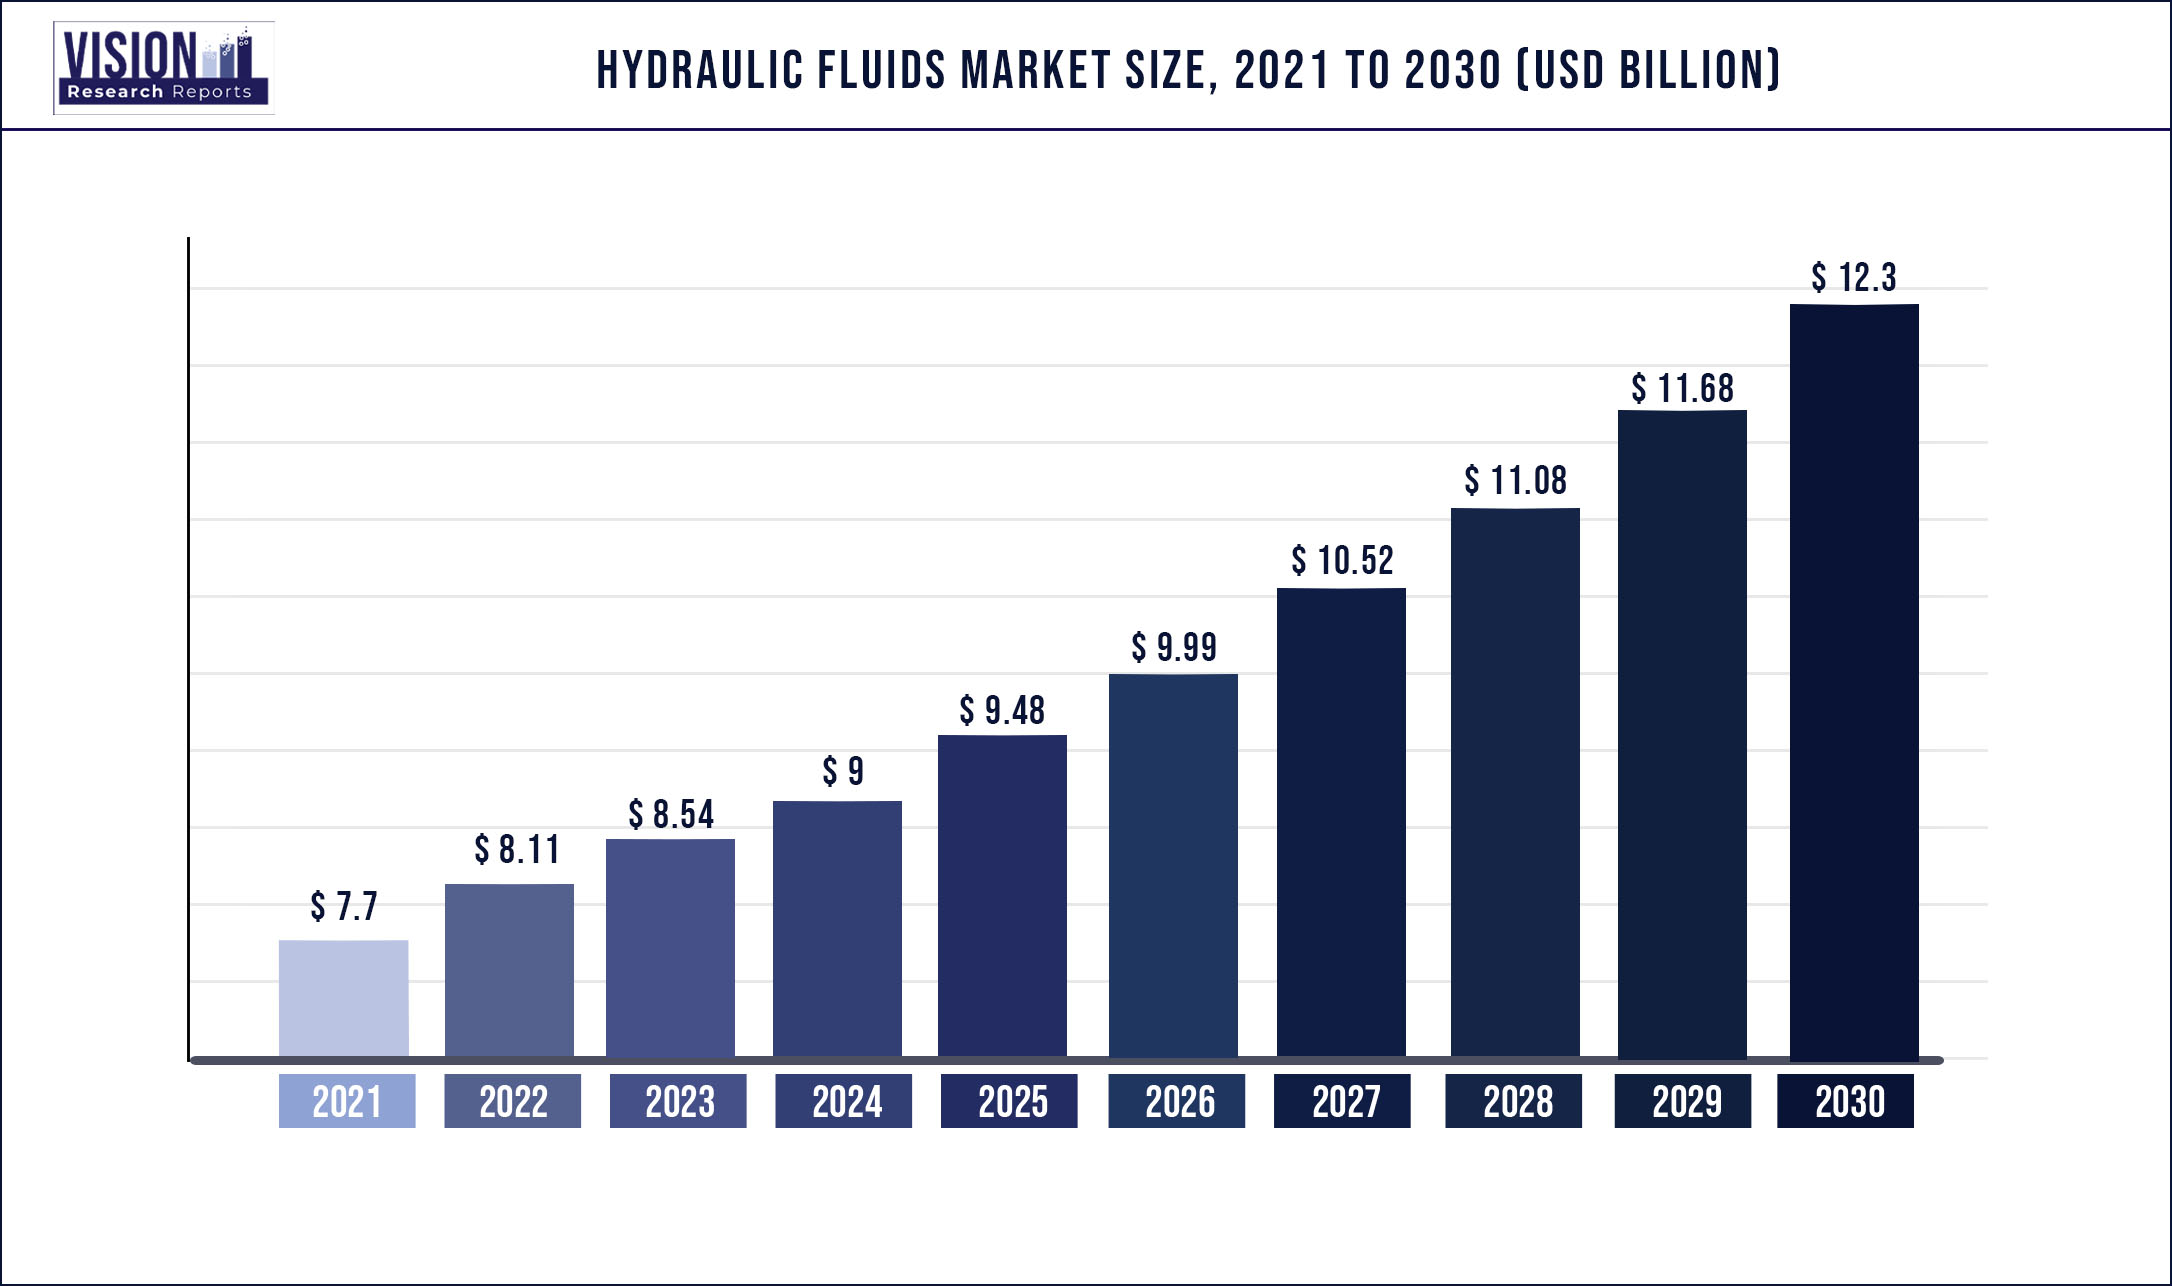 Hydraulic Fluids Market Size 2021 to 2030